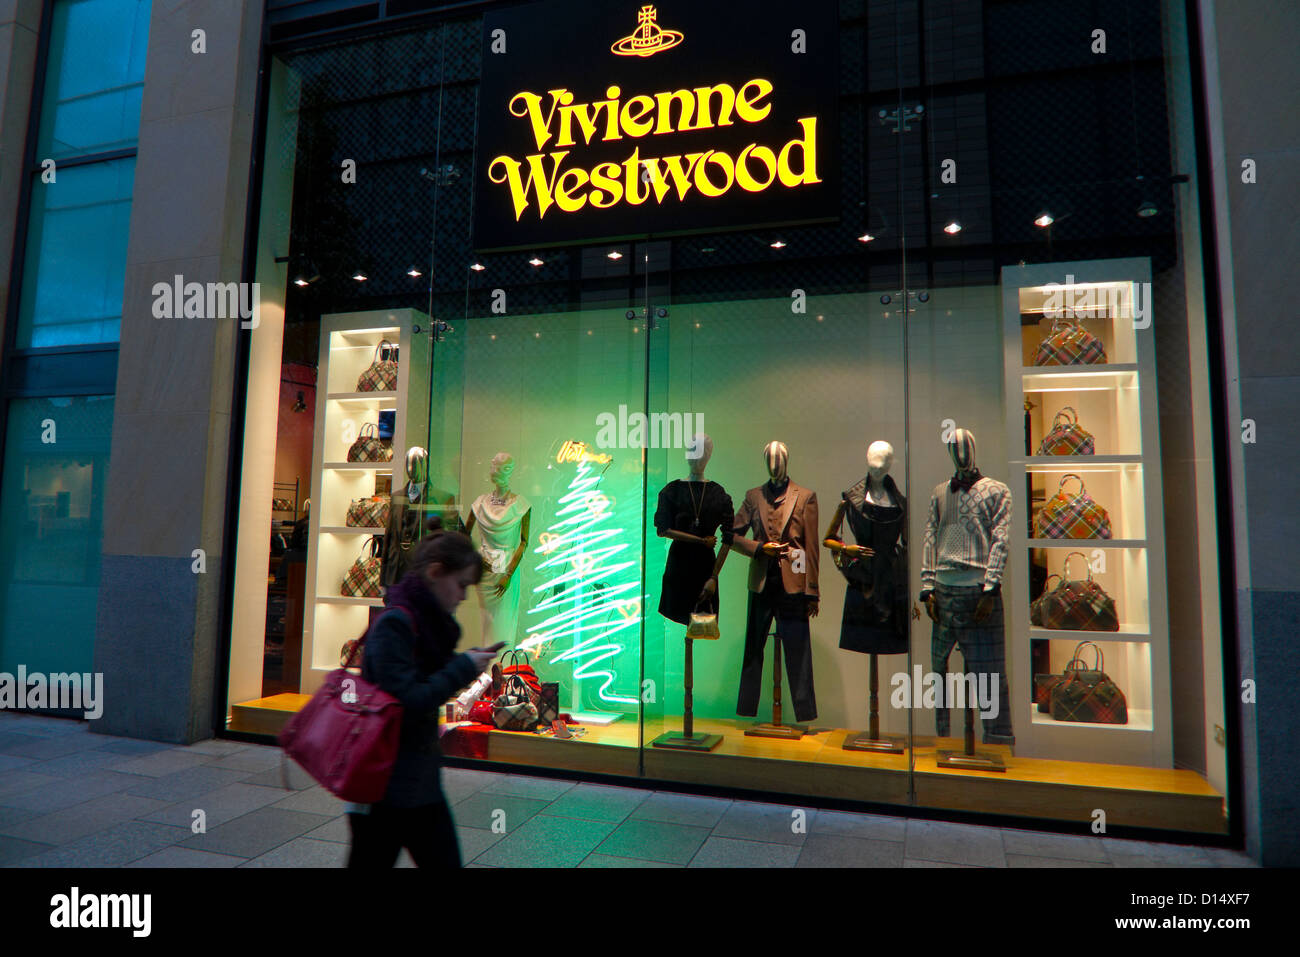 Exterior view of London fashion designer Vivienne Westwood retail shop